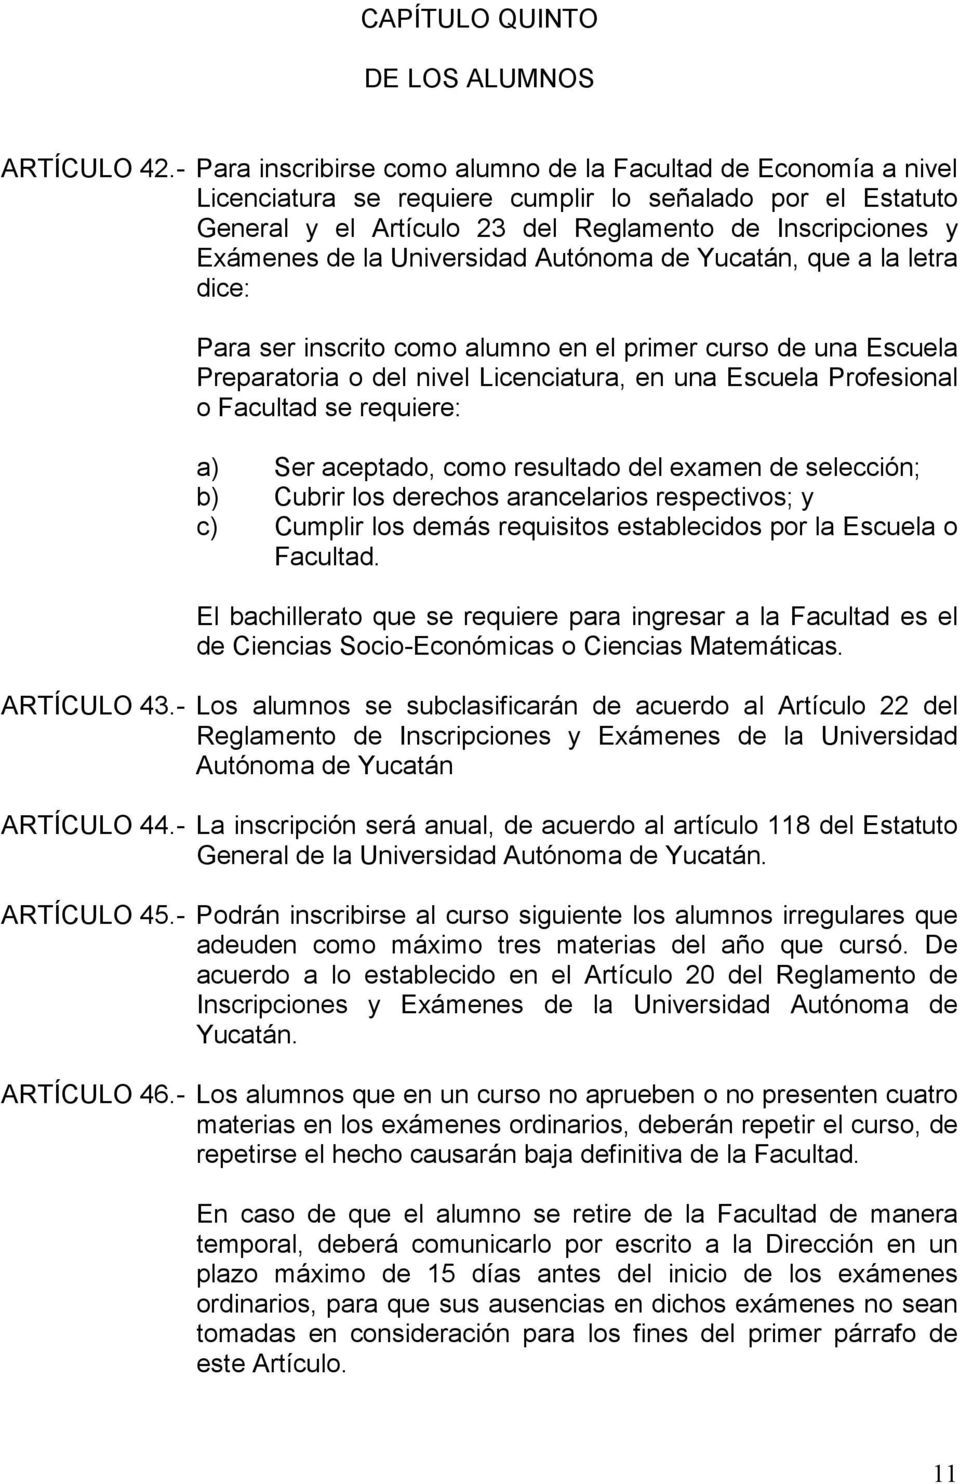 la Universidad Autónoma de Yucatán, que a la letra dice: Para ser inscrito como alumno en el primer curso de una Escuela Preparatoria o del nivel Licenciatura, en una Escuela Profesional o Facultad